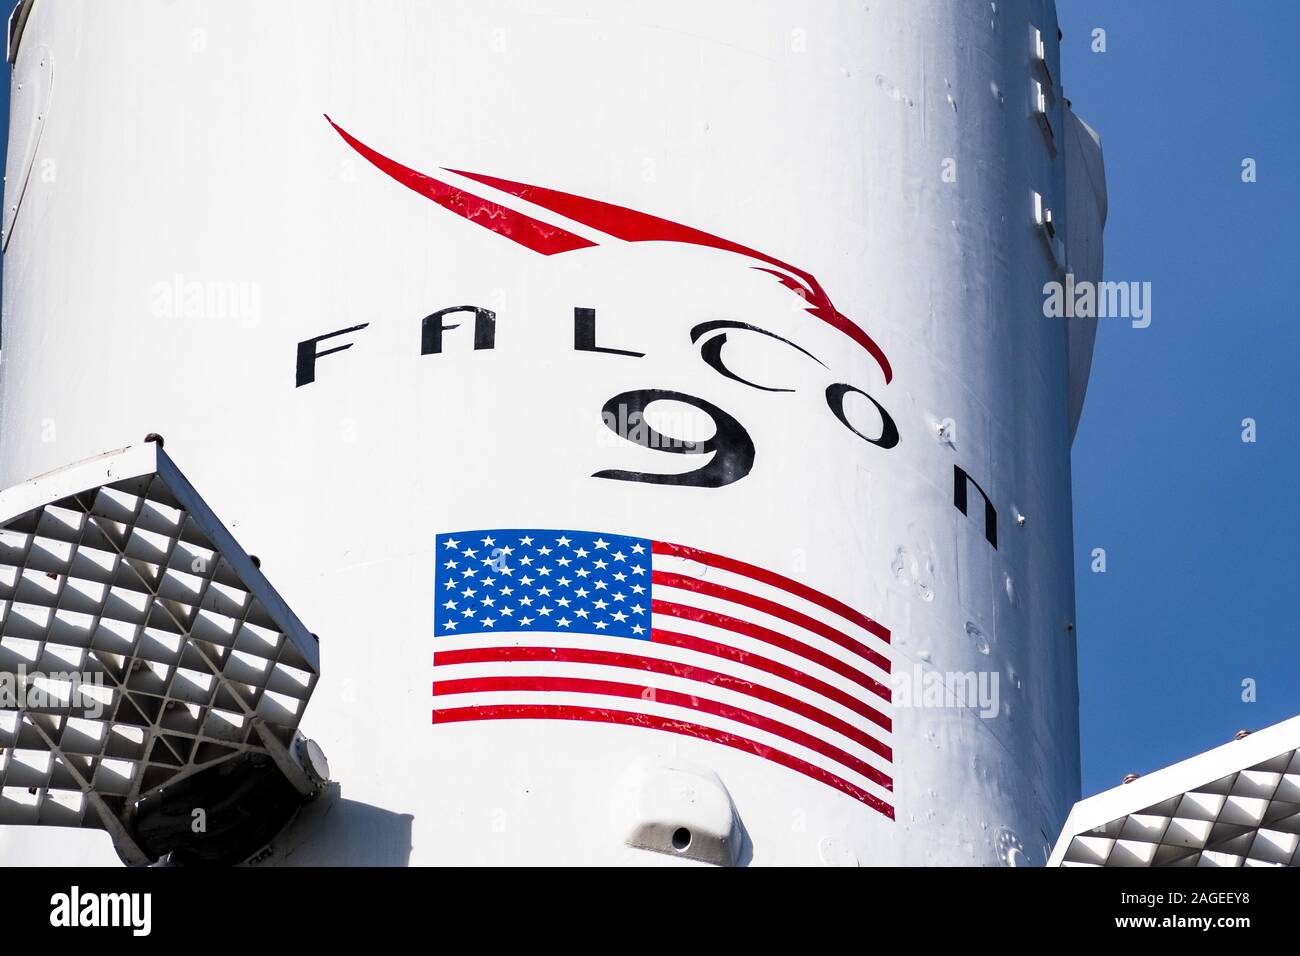 Dec 8, 2019 Hawthorne / Los Angeles / CA / USA - Falcon 9 logo en cohetes SpaceX (Exploración Espacial Technologies Corp.) la sede; SpaceX es una priva Foto de stock